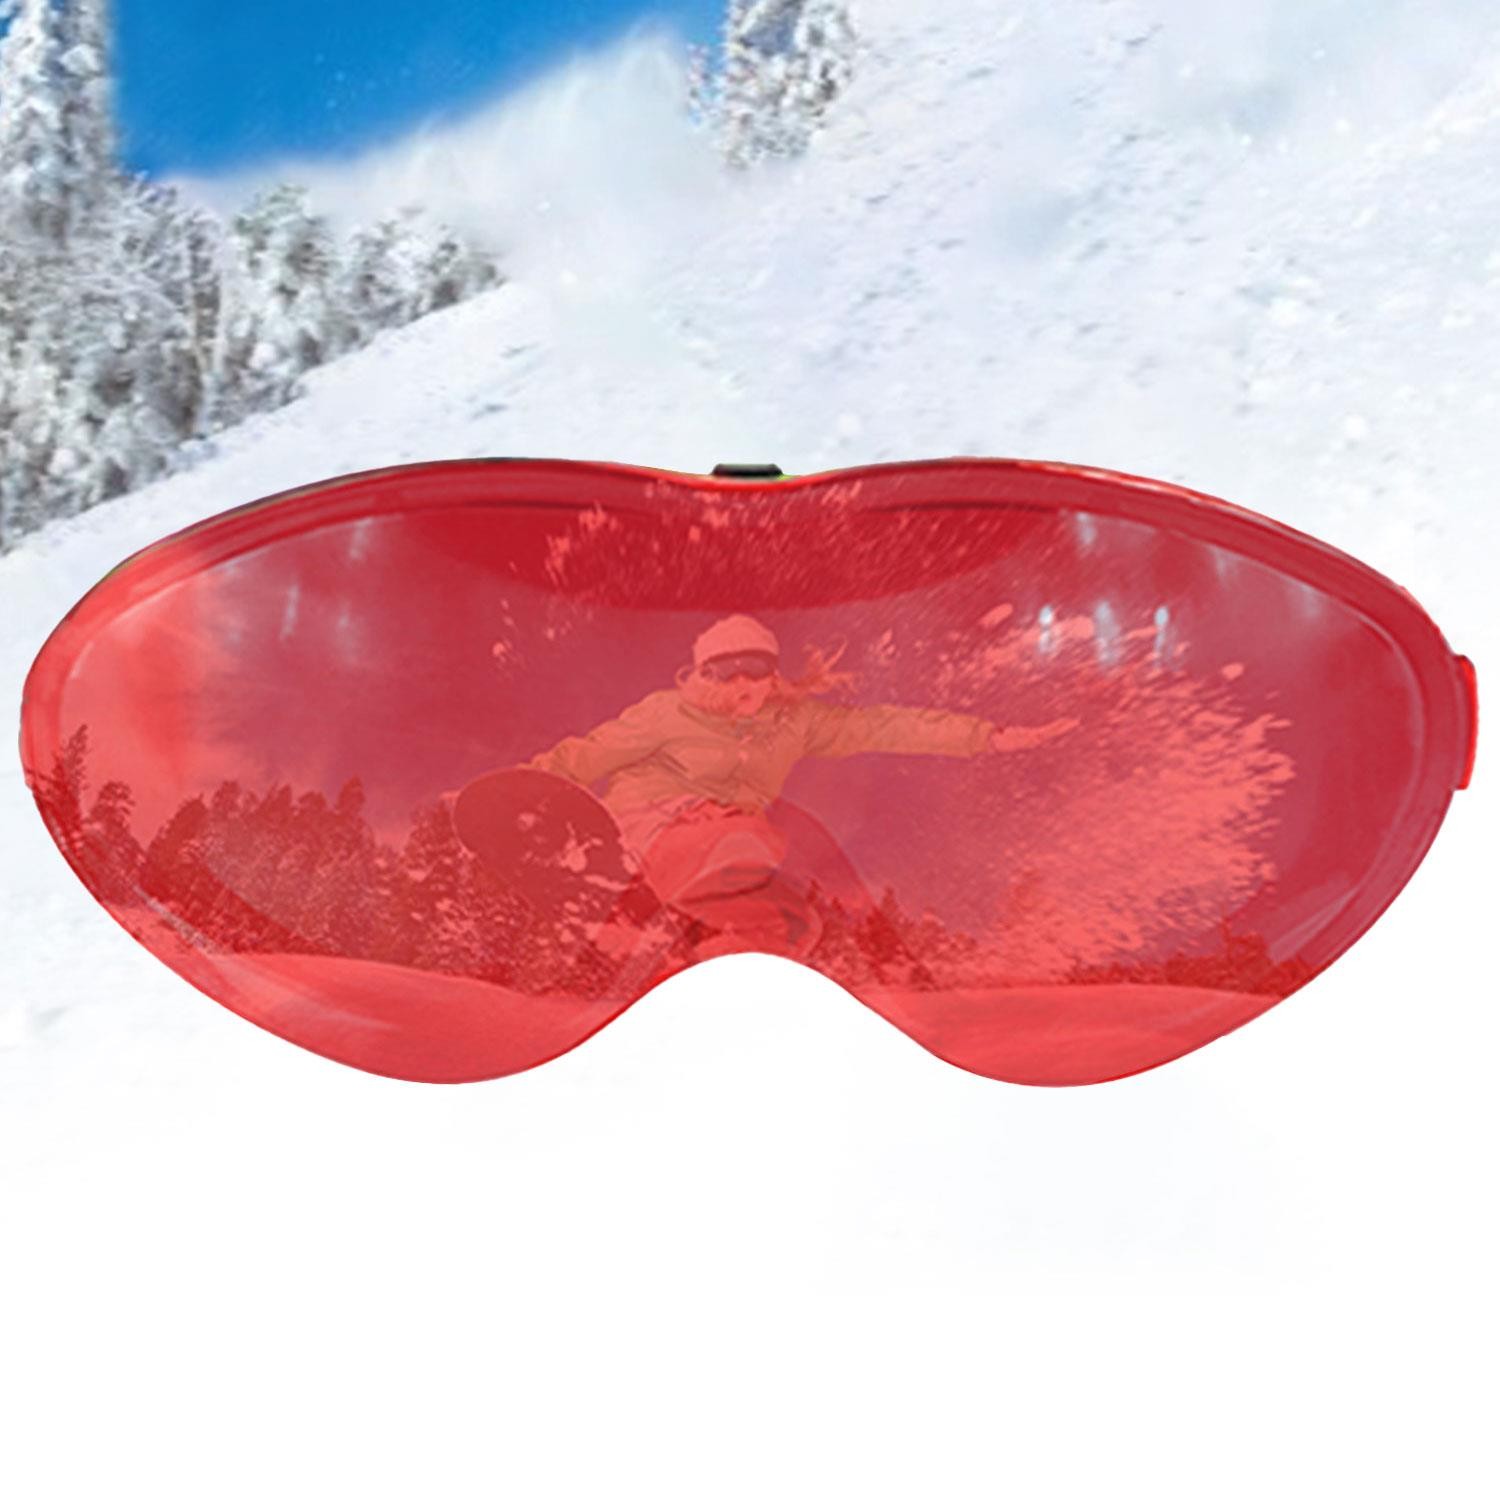 Bellasimo Çerçevesiz Kayak Gözlüğü Camı Lens Değiştirebilir Cam Antifog Güneş Kar Gözlük Camı Kırmızı